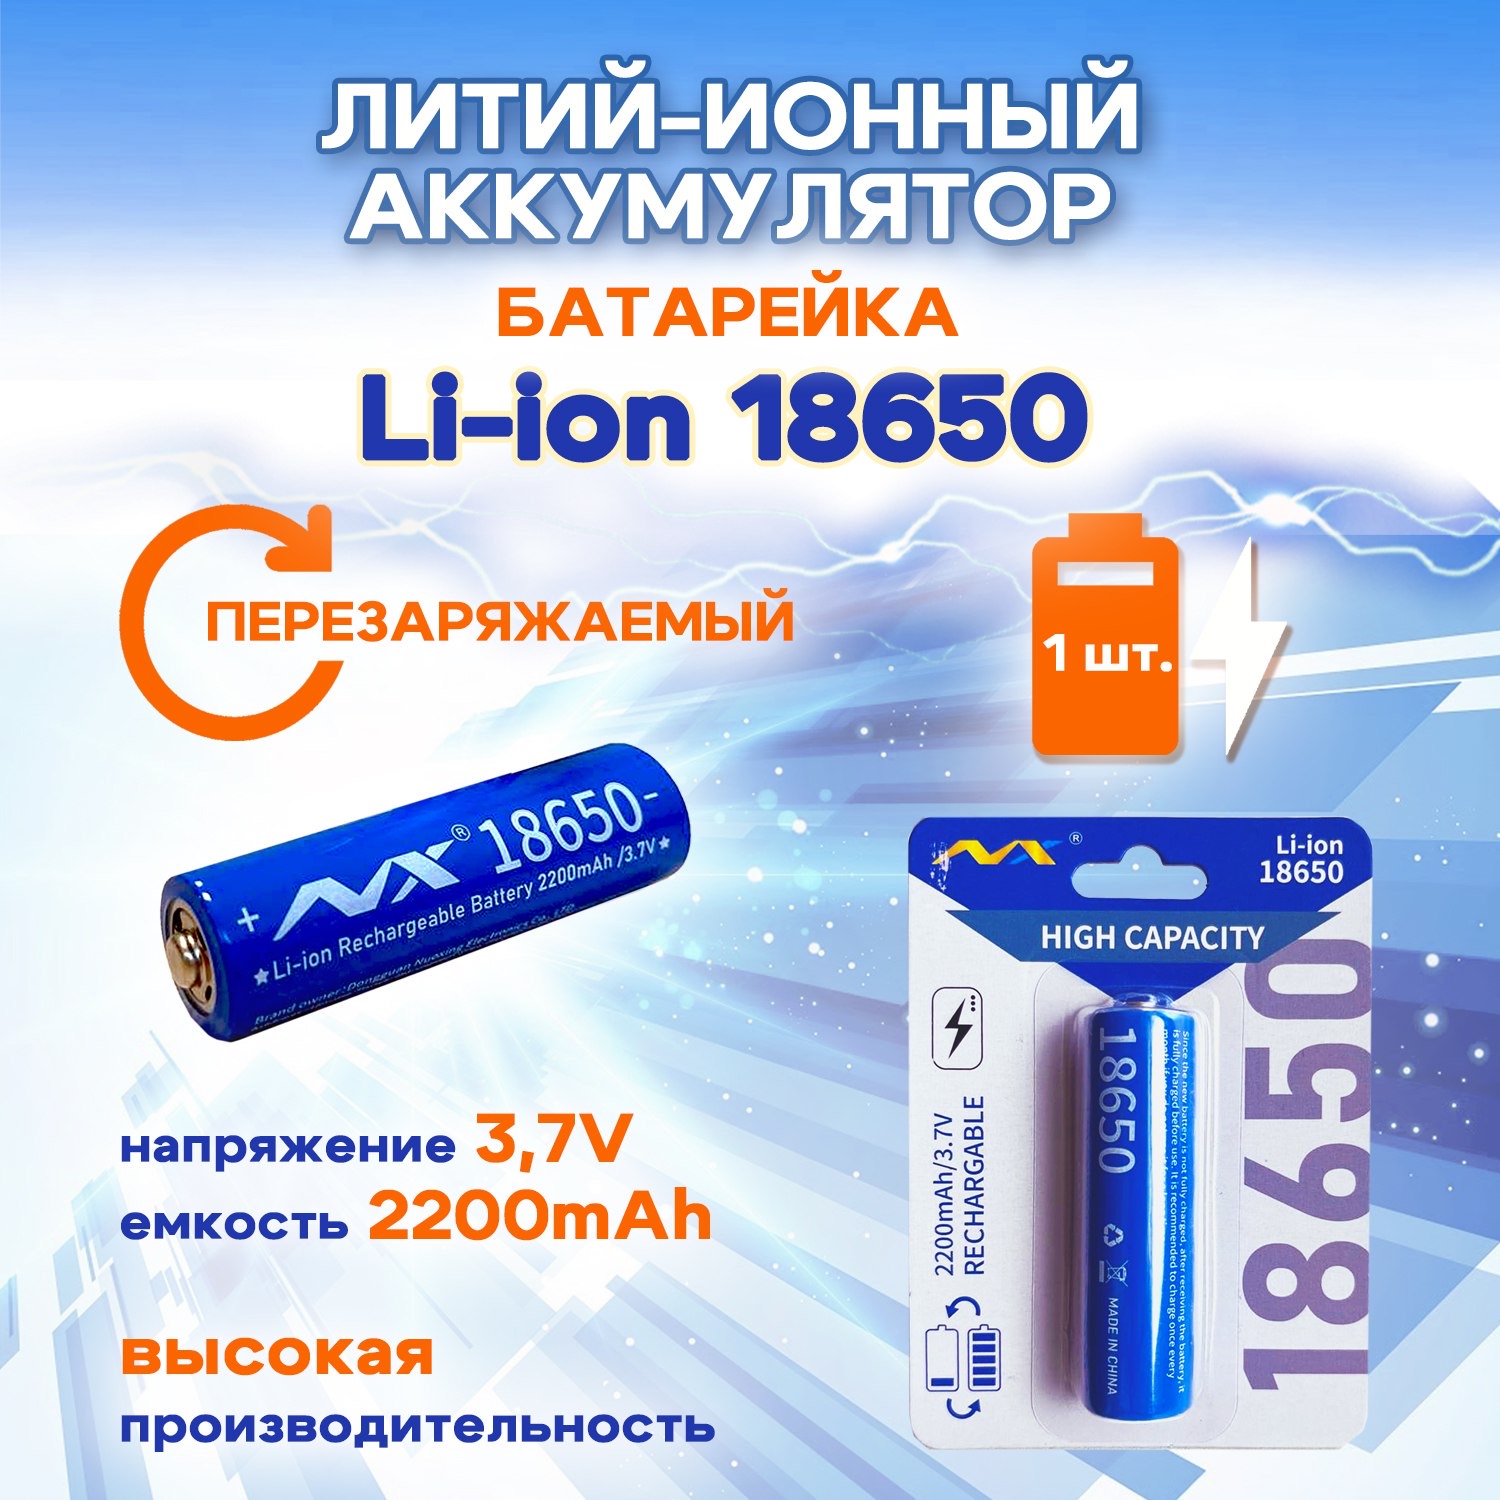 Батарейка-аккумулятор SUPER ENERGY 18650 3,7 В литий-ионный перезаряжаемый 2200 mAh, 1 шт аккумулятор 18650 высокотоковый lg he2 2500мач 25а